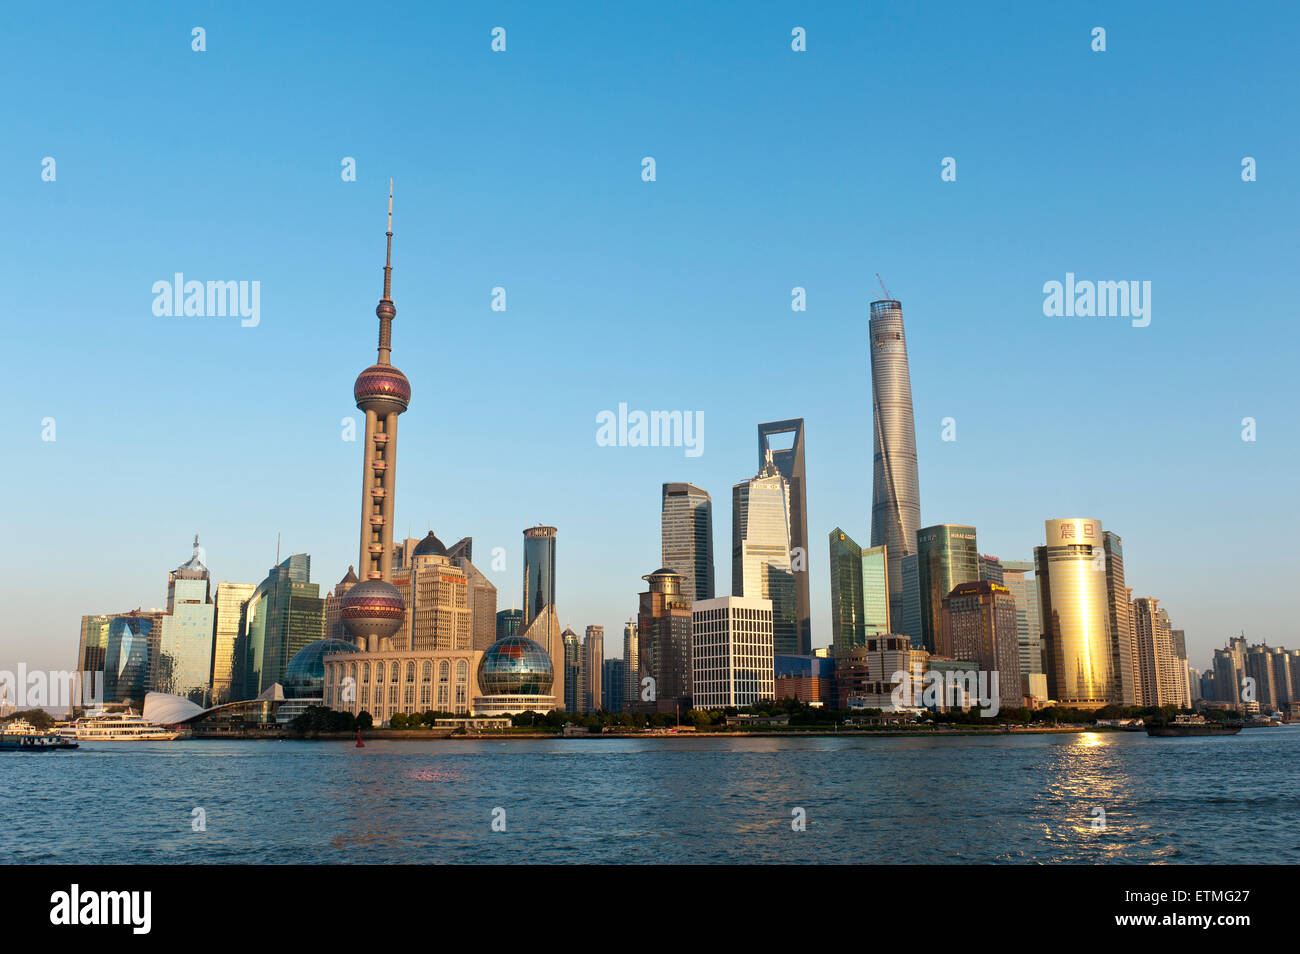 L'horizon de Pudong, gratte-ciel, la tour de télévision Oriental Pearl Tower, Tour de Shanghai, tour Jin Mao, la rivière Huangpu, Shanghai Banque D'Images